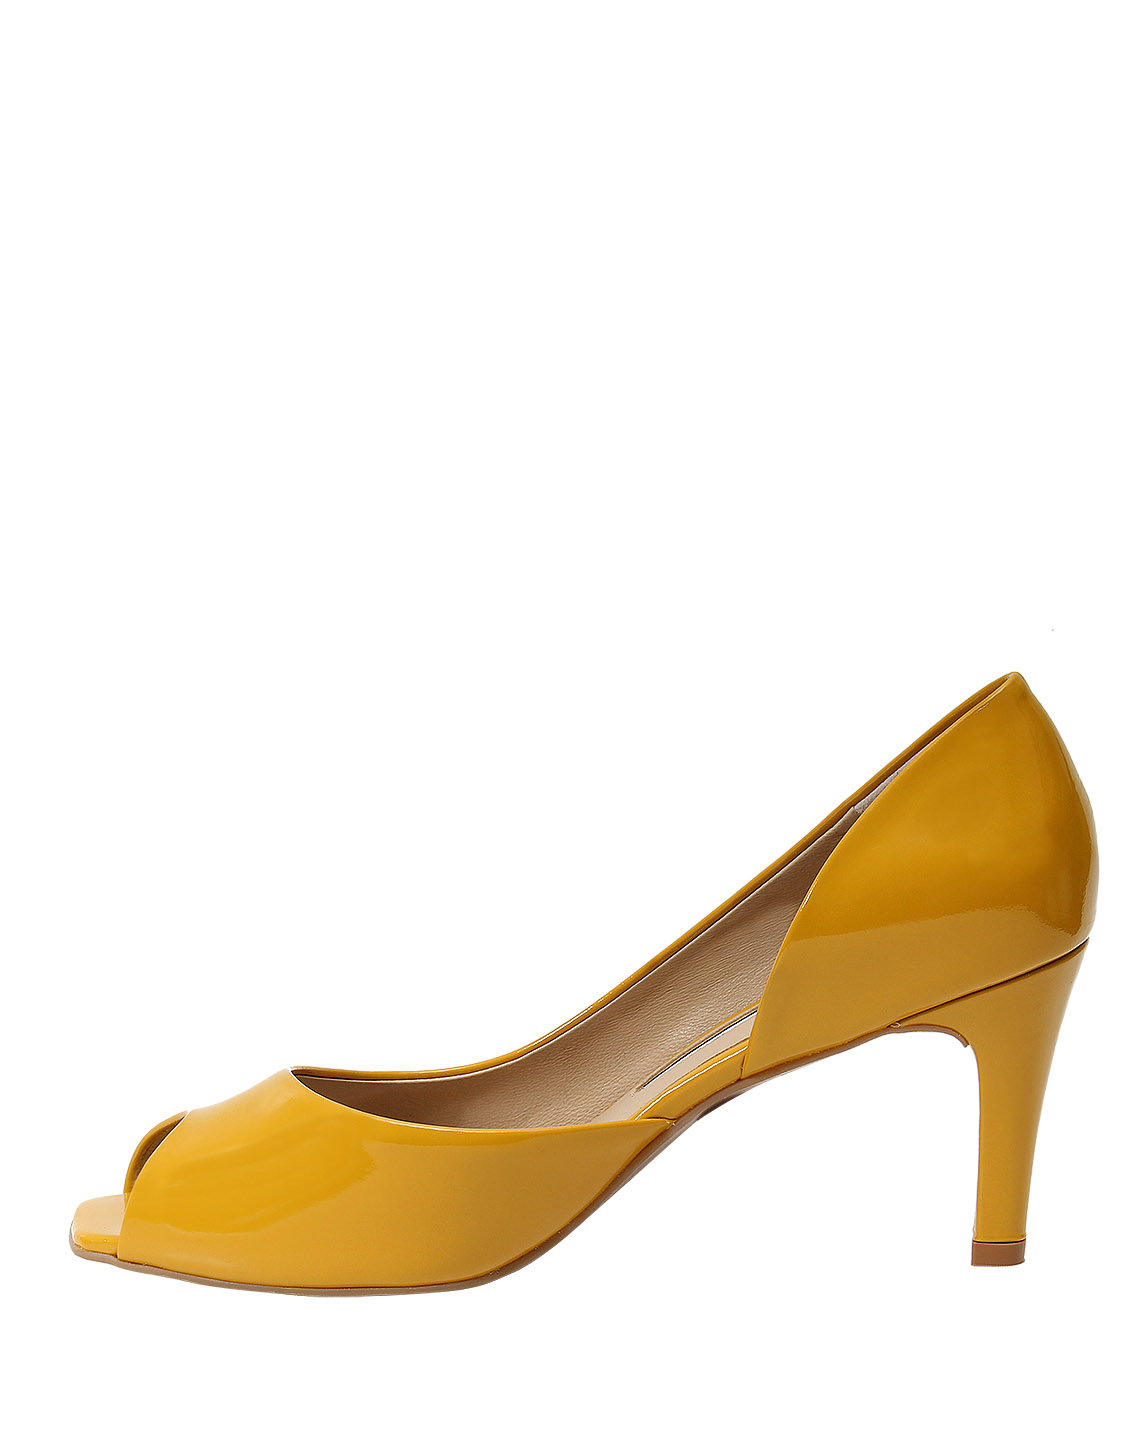 Calzado Peep Toe FRP-7849 Color Amarillo